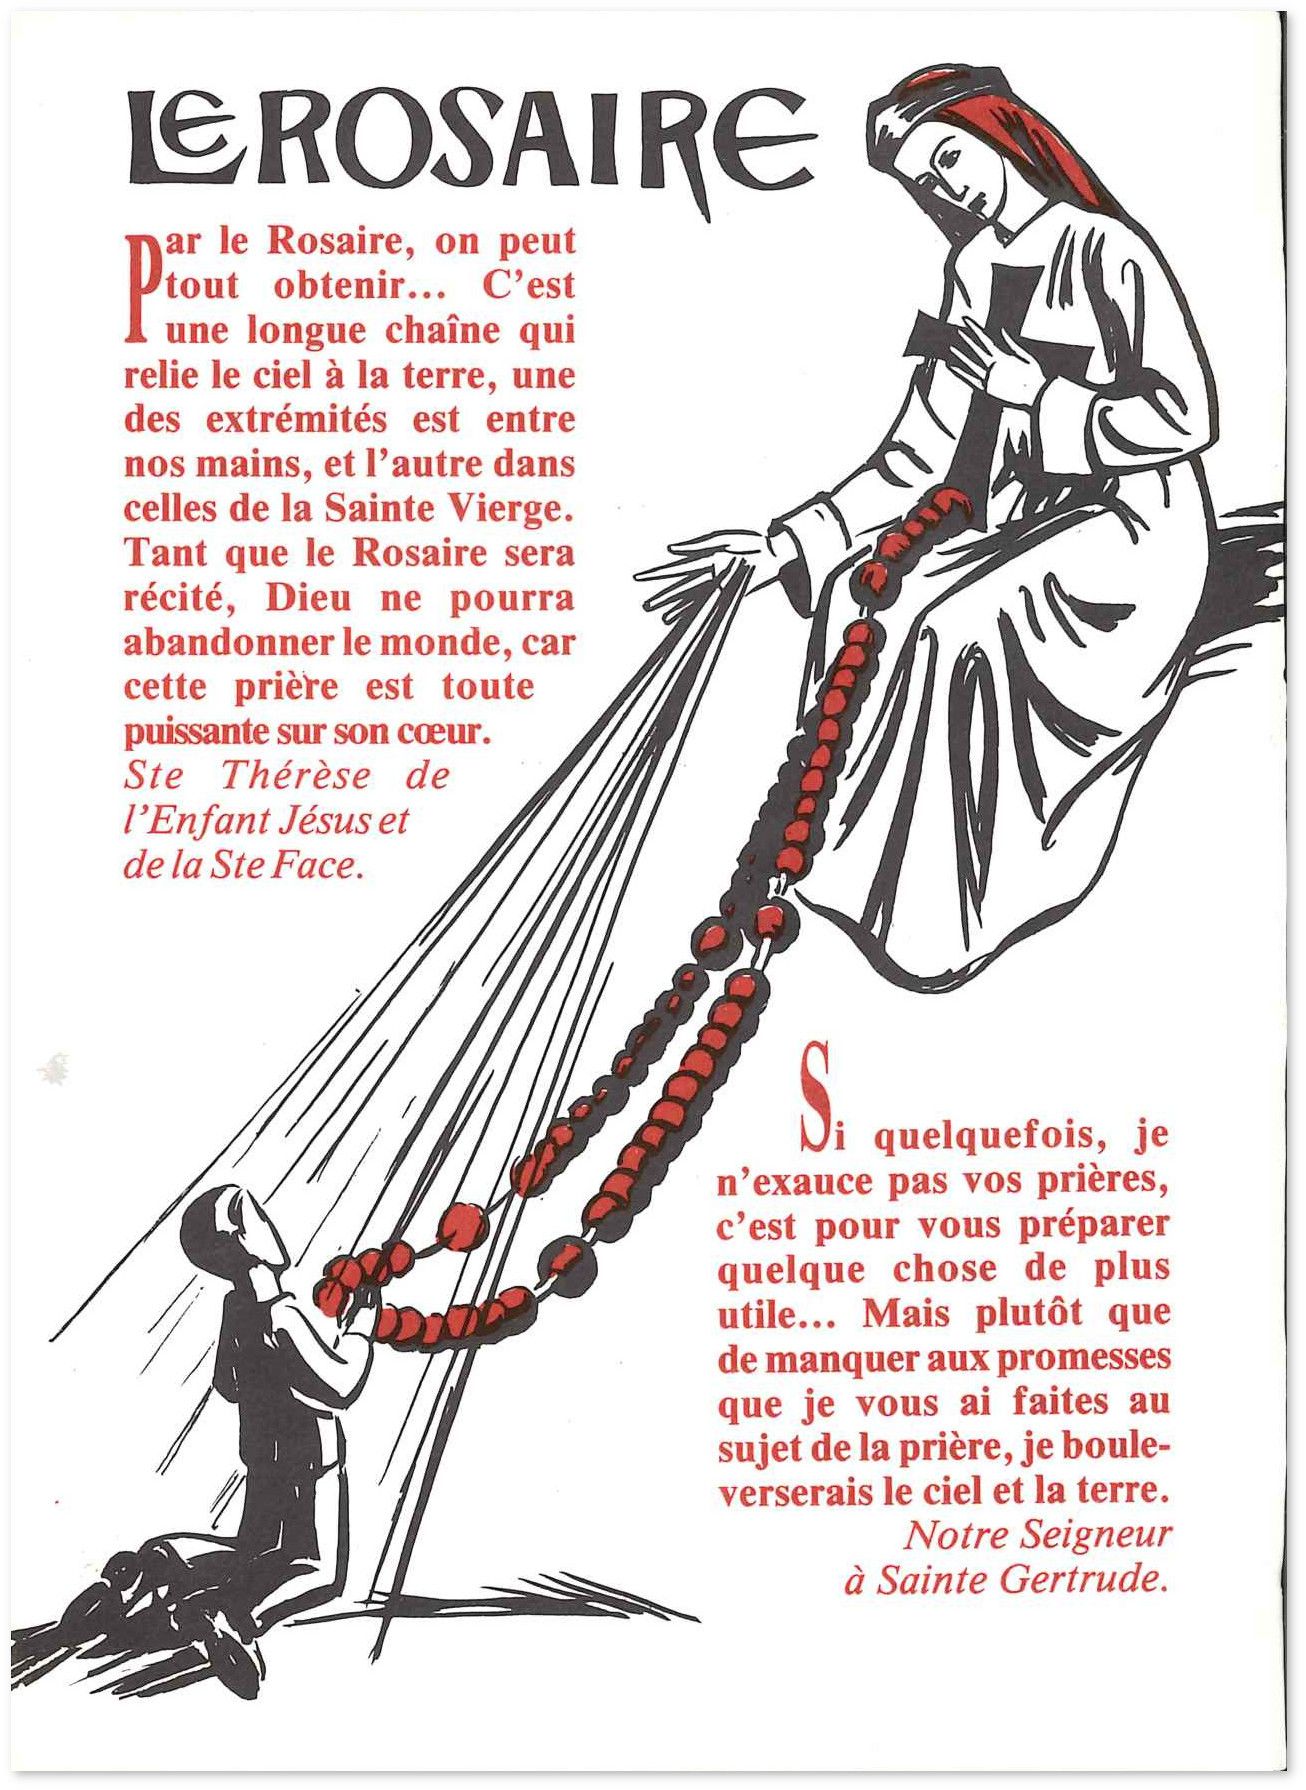 Le rosaire - Dépliant pour la récitation du Rosaire | Livres en famille